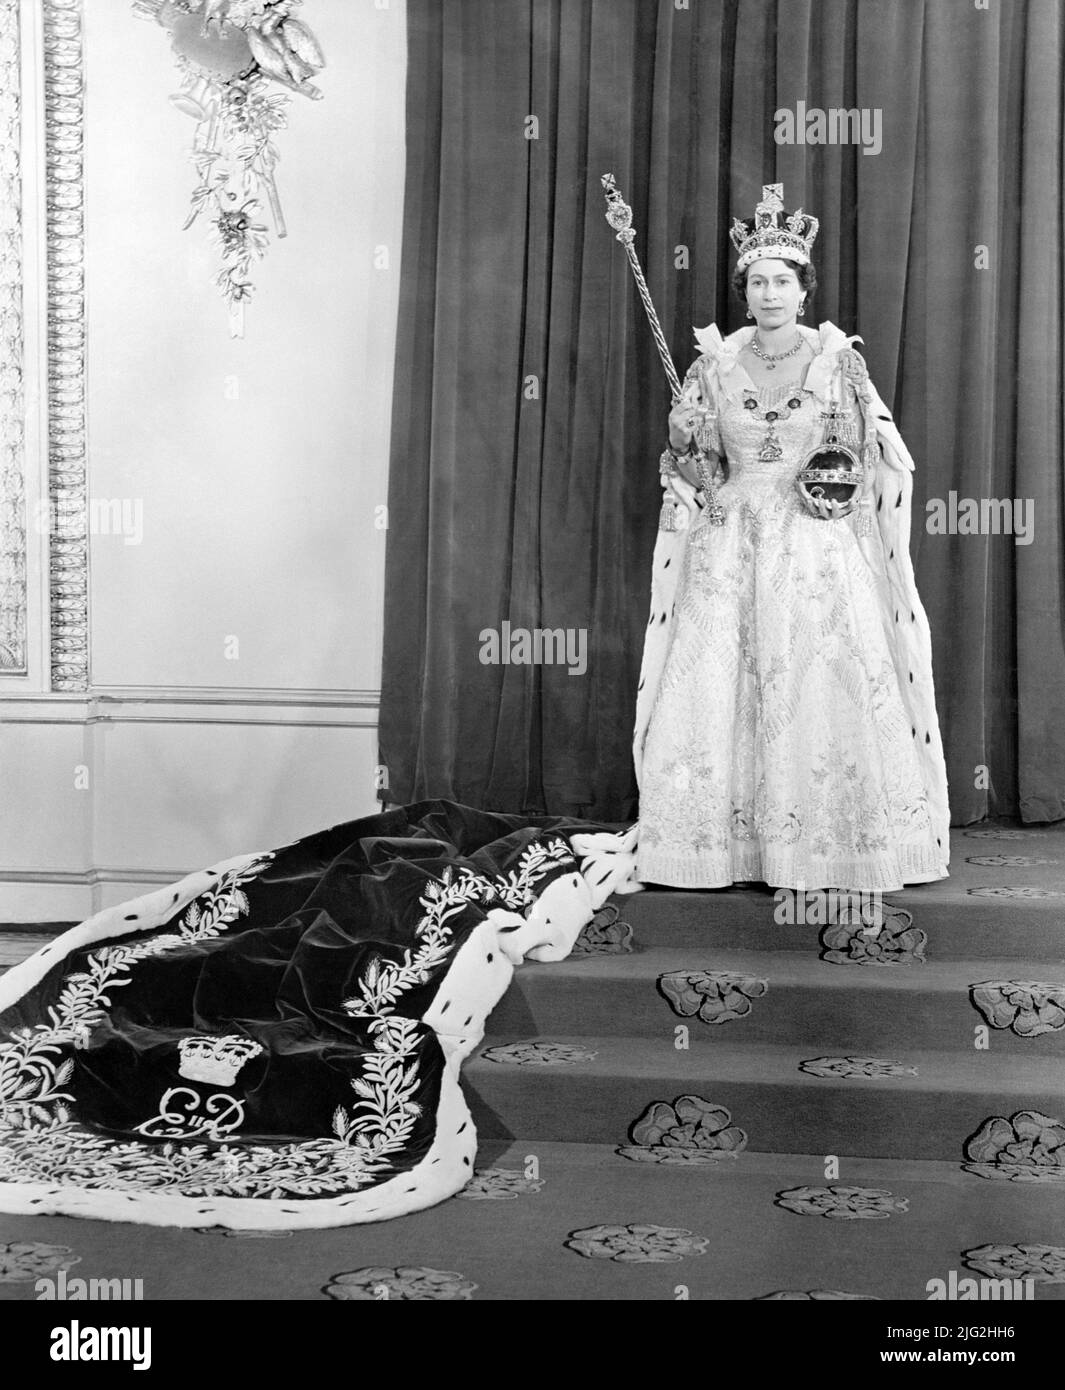 SÓLO EN BLANCO Y NEGRO Foto del archivo fechada el 02/06/53 de la reina Isabel II que llevaba el vestido de la Coronación en la habitación del Trono en el Palacio de Buckingham, después de su Coronación en la Abadía de Westminster. El vestido de la Coronación de la Reina se exhibirá en el 'Jubileo Platino: La Coronación de la Reina', una exposición especial que se celebrará en St George's Hall y en el vestíbulo Lantern del Castillo de Windsor, Berkshire. Fecha de emisión: Miércoles 6 de julio de 2022. Foto de stock